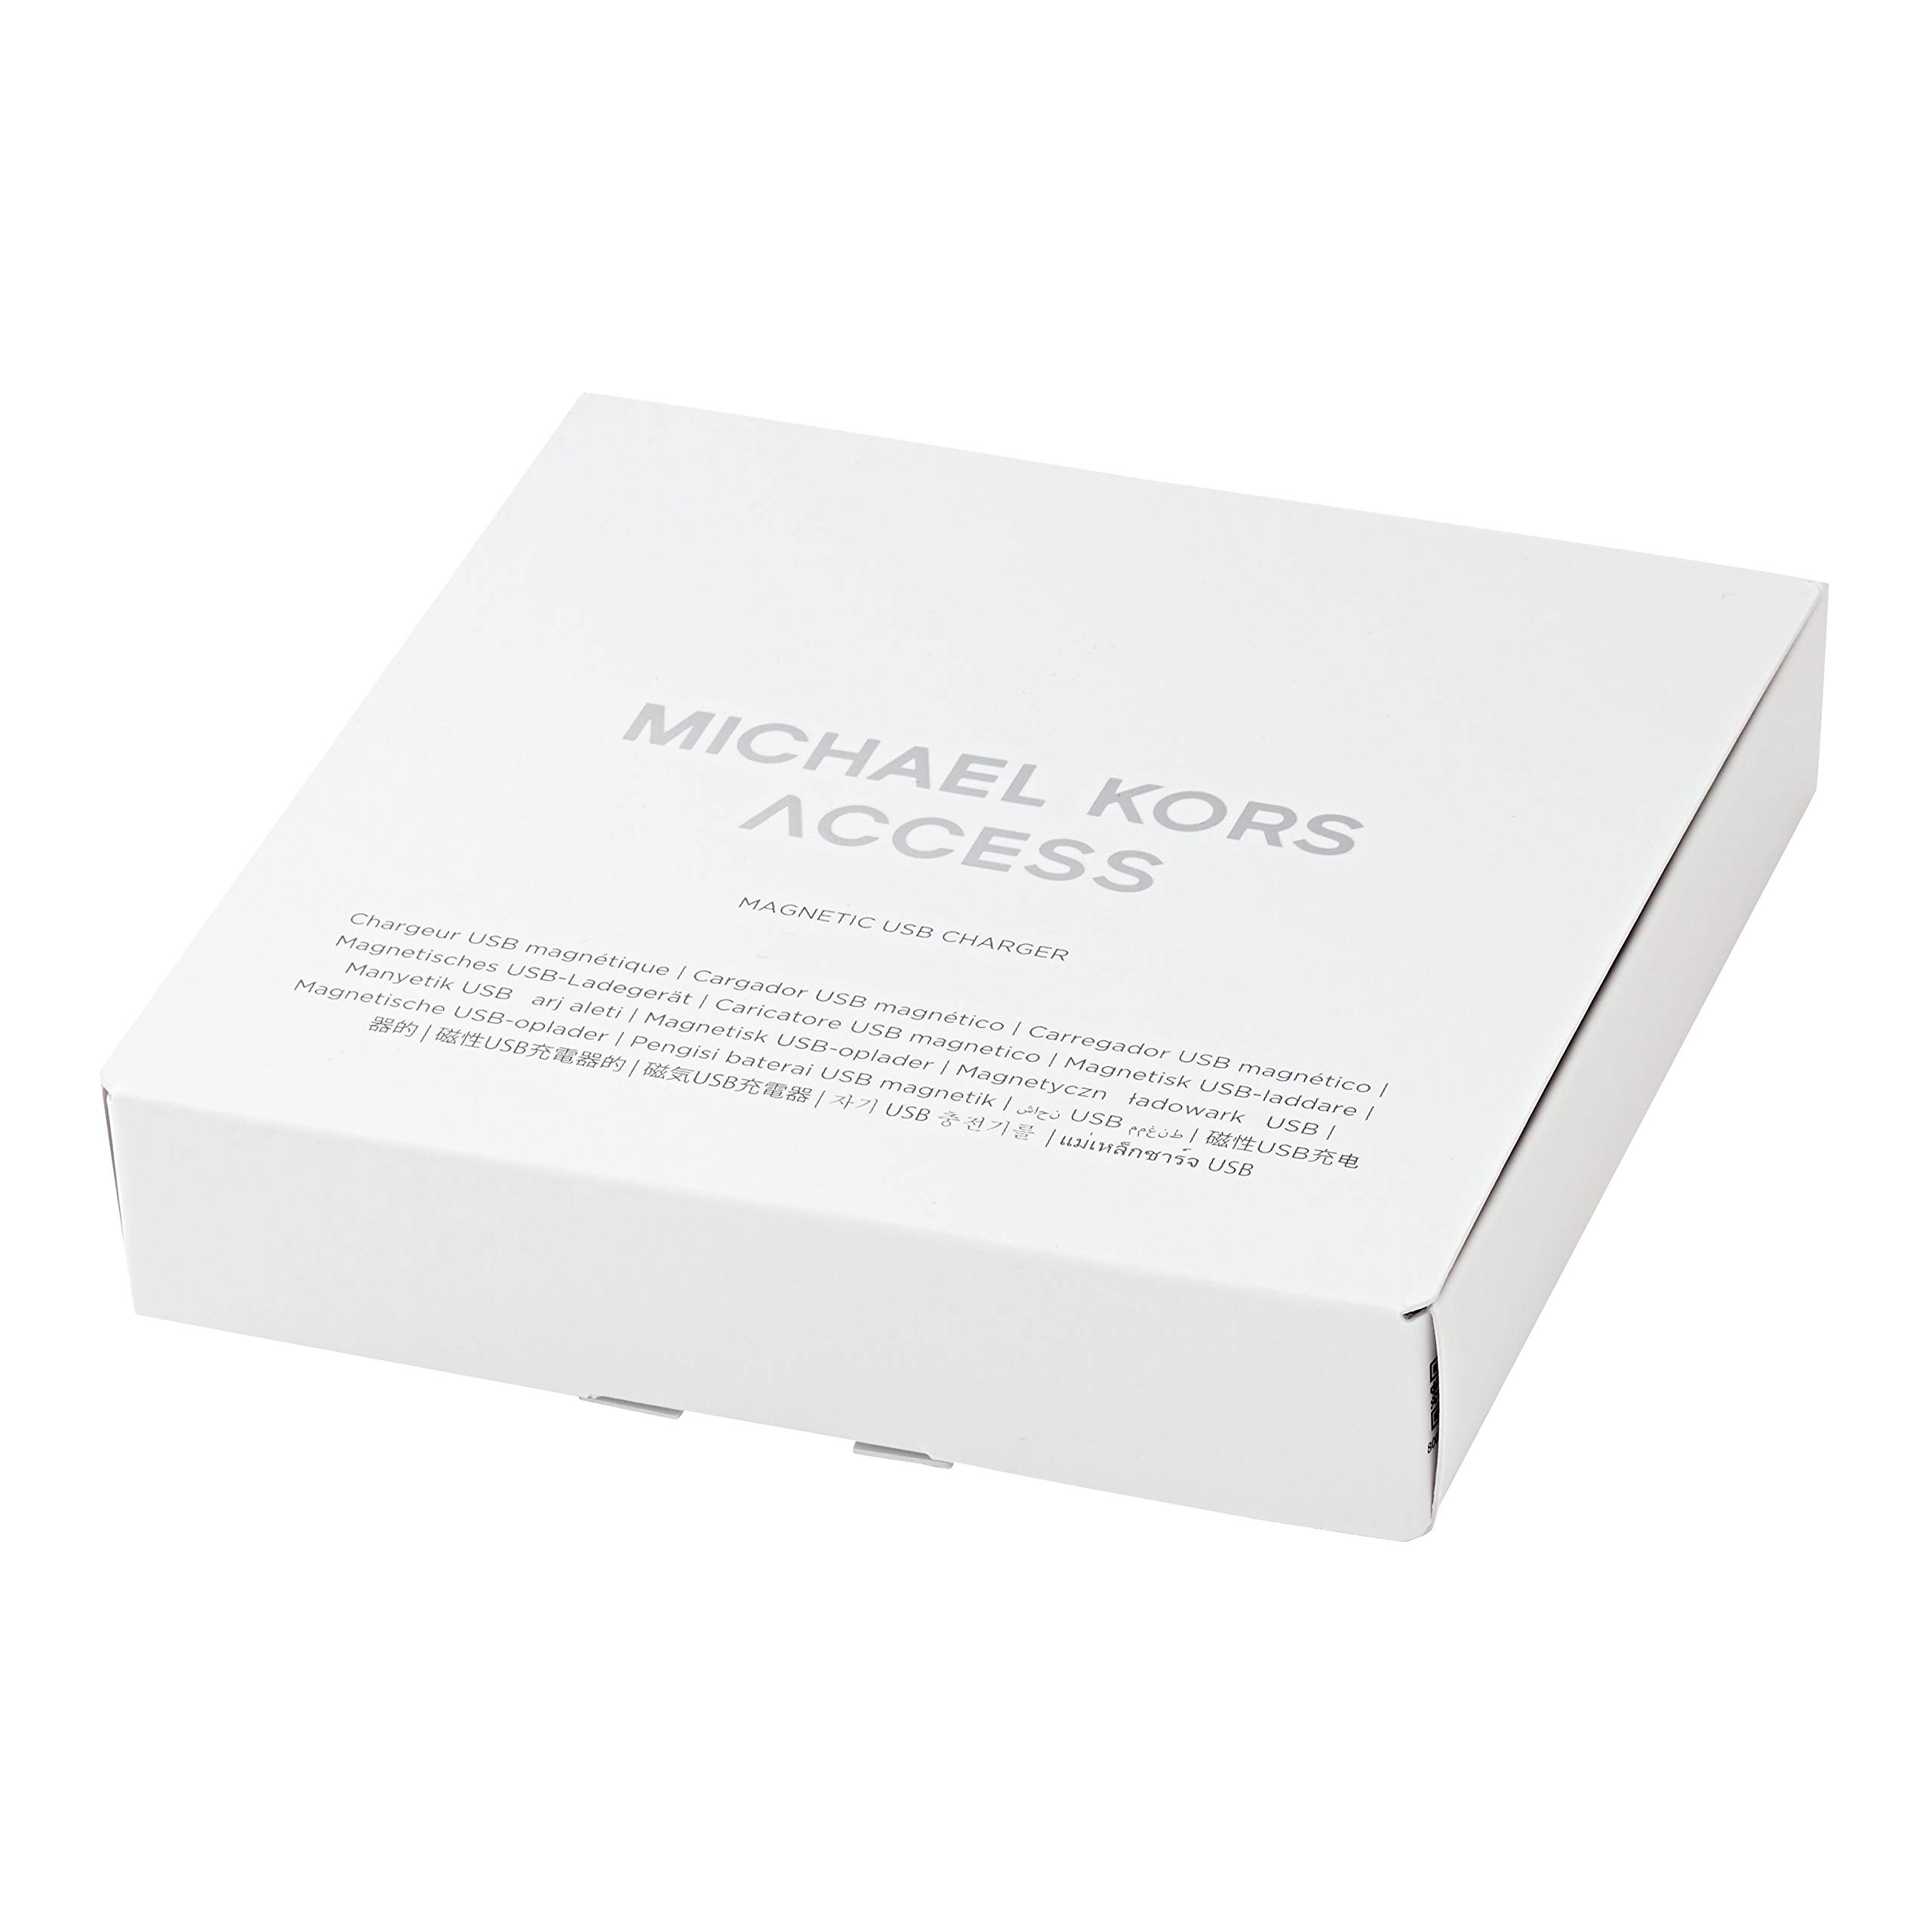 Michael Kors Access Smartwatch Charger - White (Model: MKT0002) Compatible with Gen 4 MKGO, Gen 4 Runway, Gen 4 Sofie, Gen 5 Lexington and Gen 5 Bradshaw